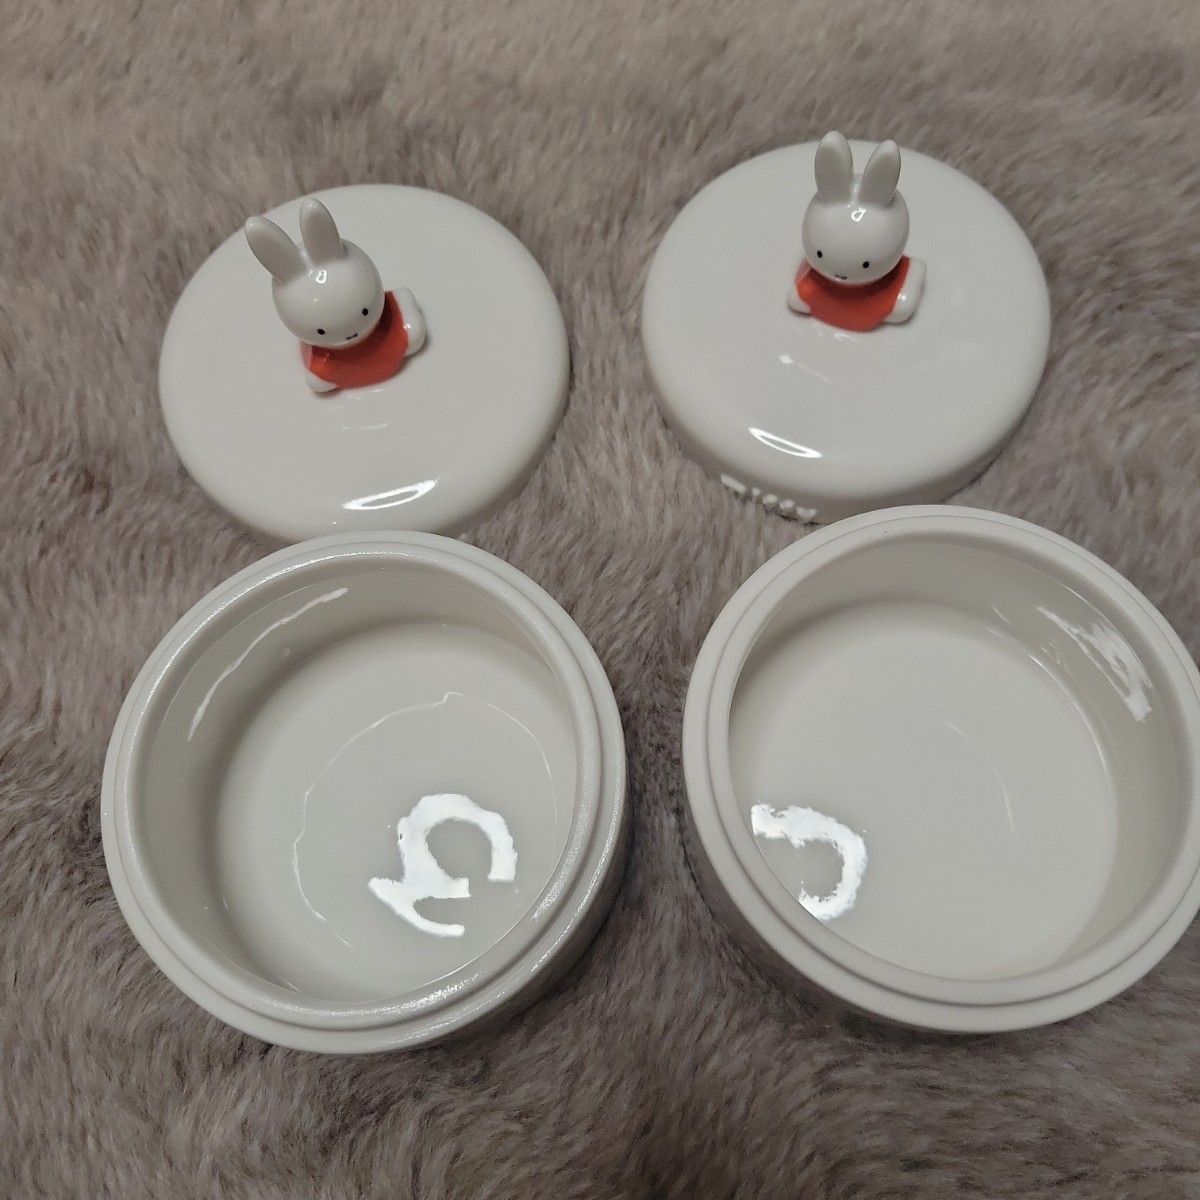 激カワ 希少 未使用 miffy 陶器 キャニスター 2個セット 小物入れ 容器 ミッフィー ミッフィーグッズ 2005